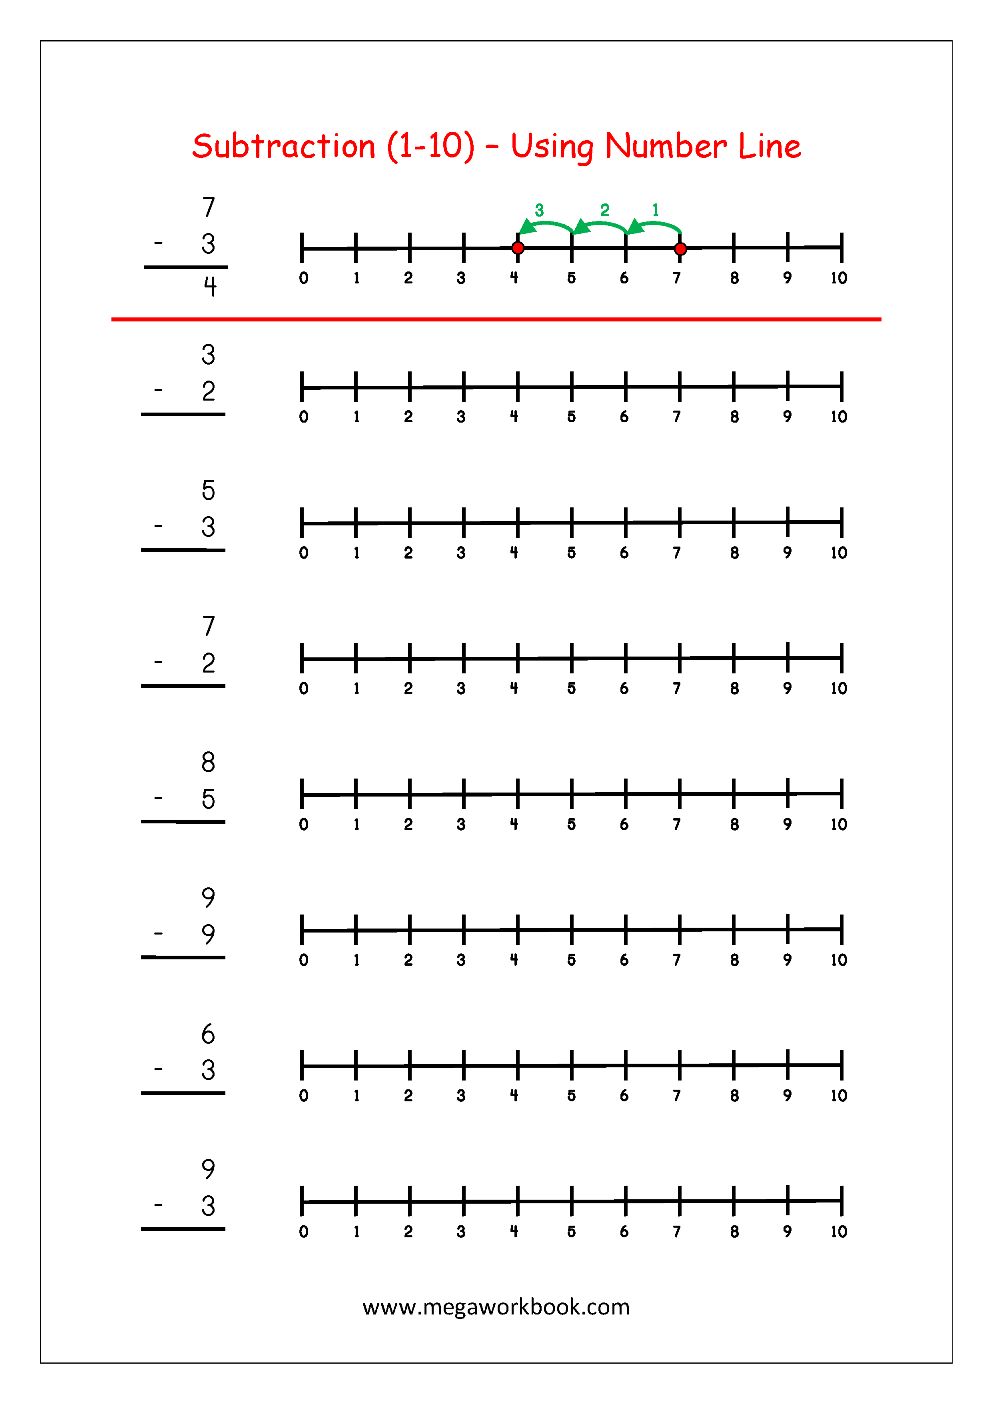 Subtraction Using Number Line | Maths Worksheets For Kindergarten - Free Printable Number Line For Kids